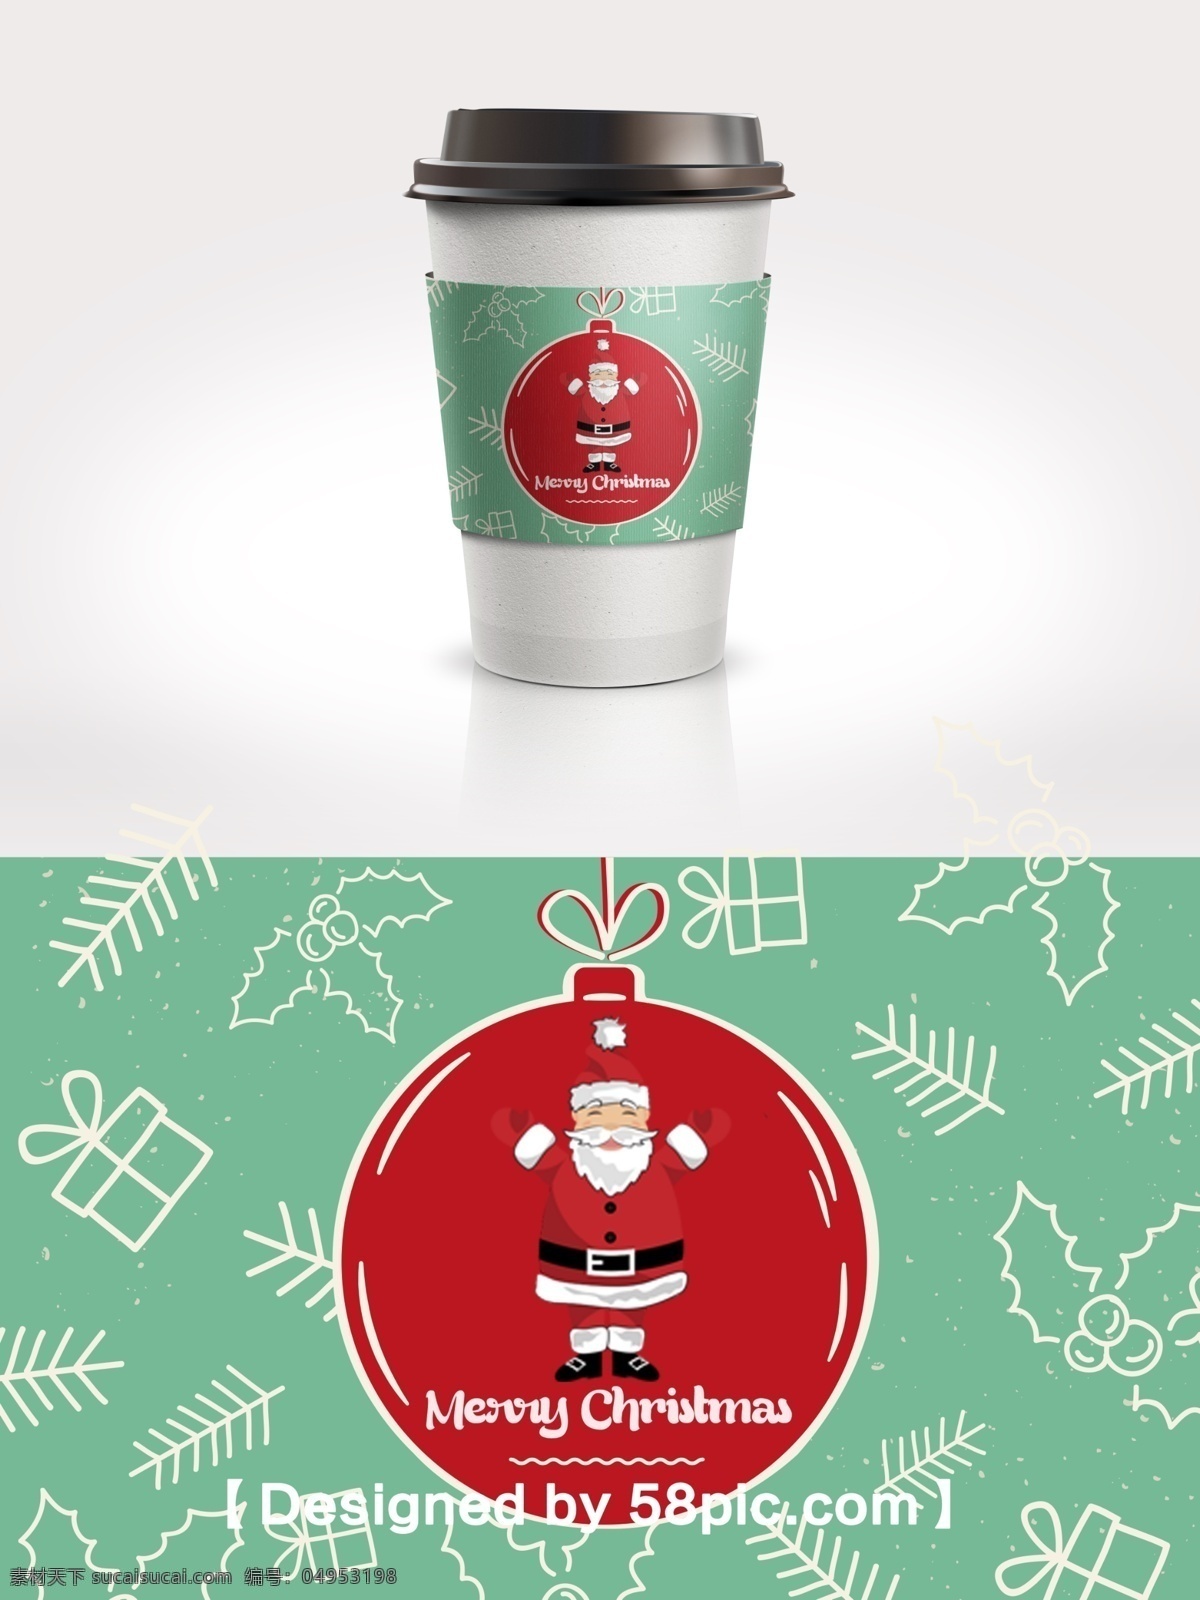 红 绿色 圣诞节 圣诞球 节日 杯 套 psd素材 广告设计模版 红绿色 红色圣诞球 咖啡杯套设计 包装设计 圣诞素材